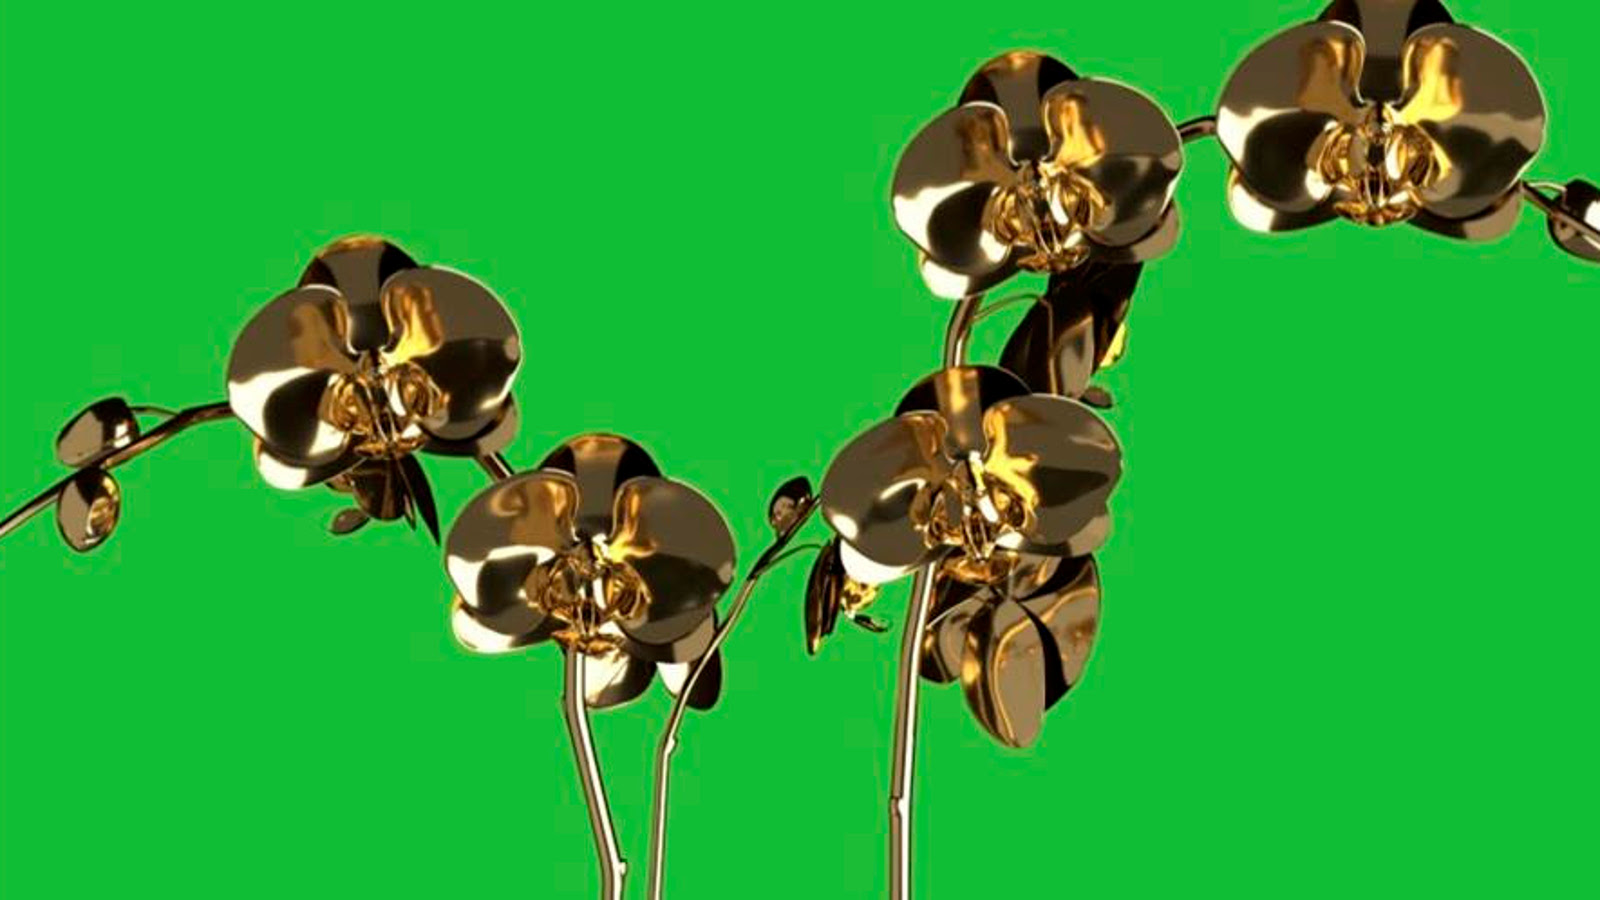 Kuvassa on vihreällä pohjalla metellisia kullattuja orkkideoja.